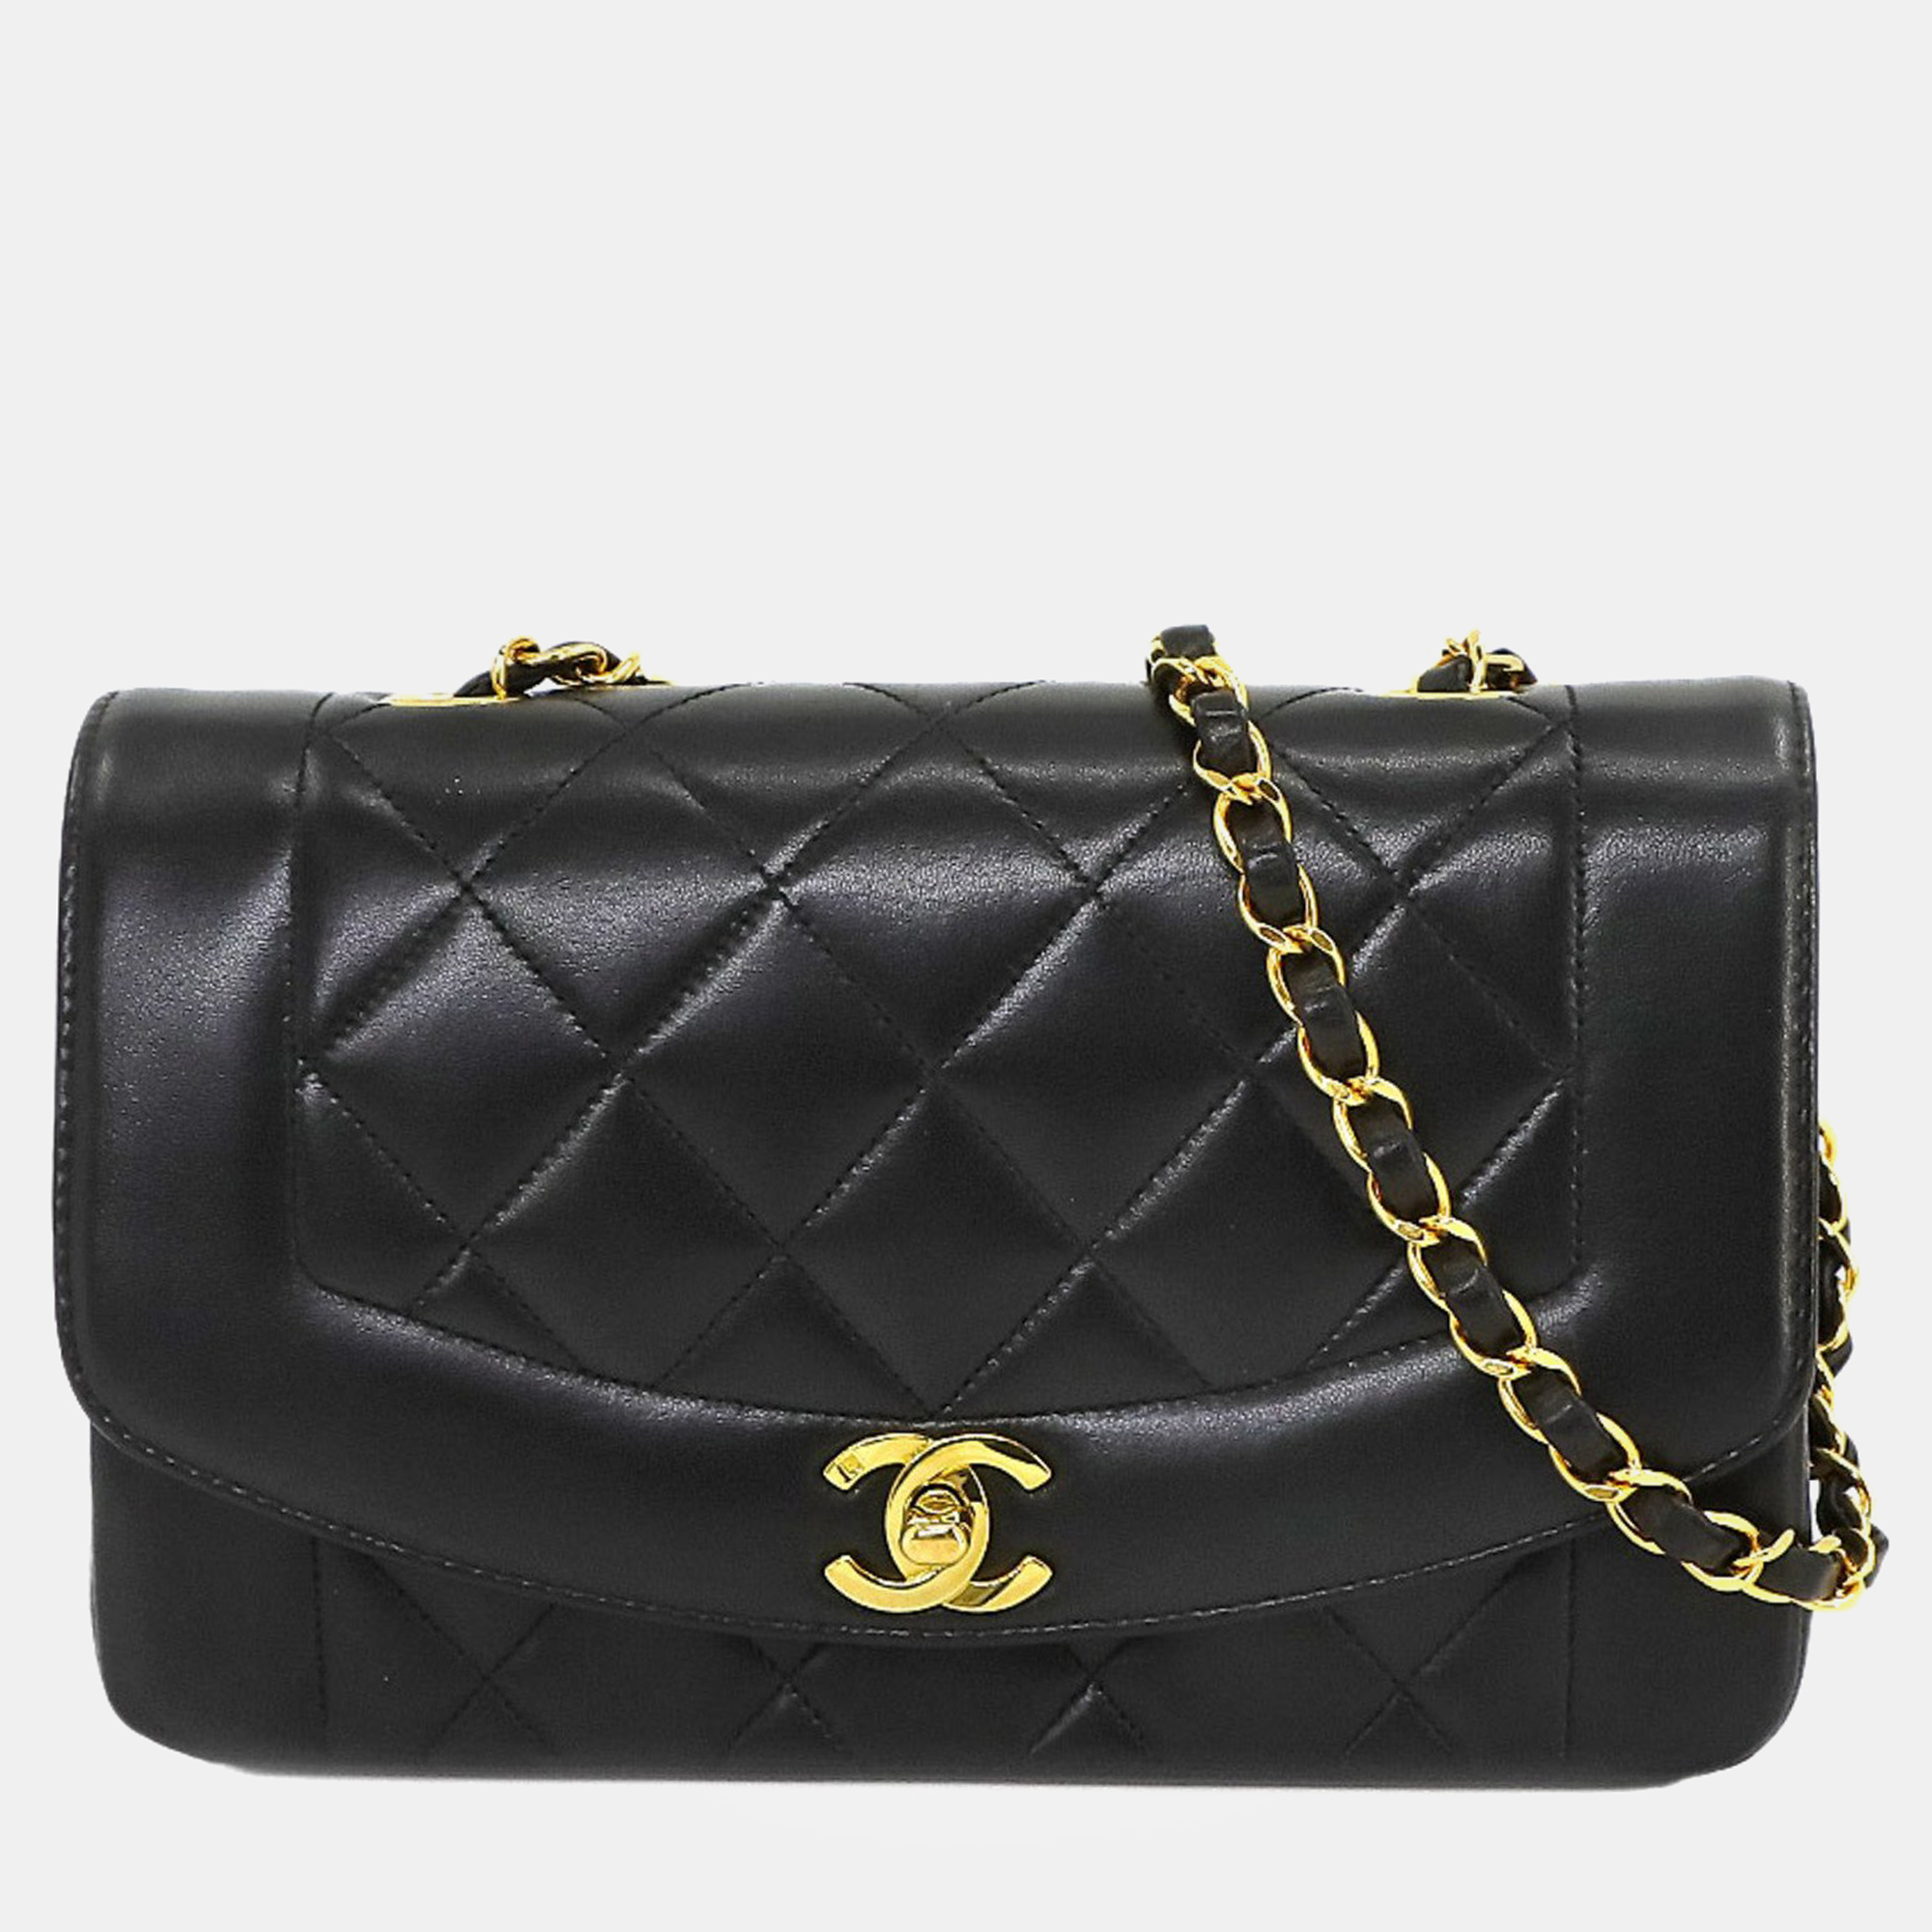 Chanel black leather mini vintage diana shoulder bag